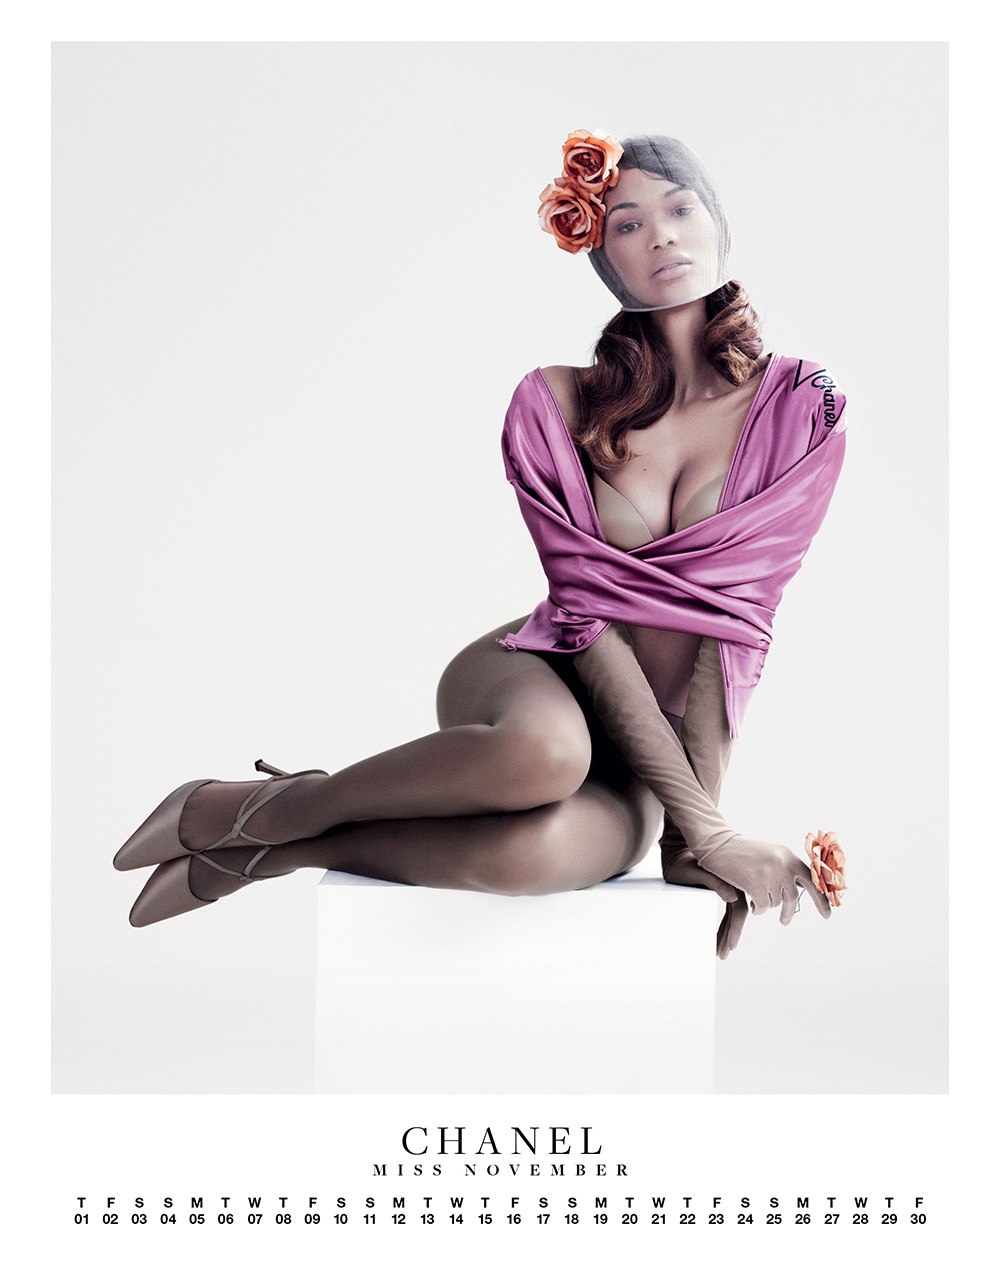 Chanel-Iman-posed-Carine-Roitfeld-edited-spread-VMAN